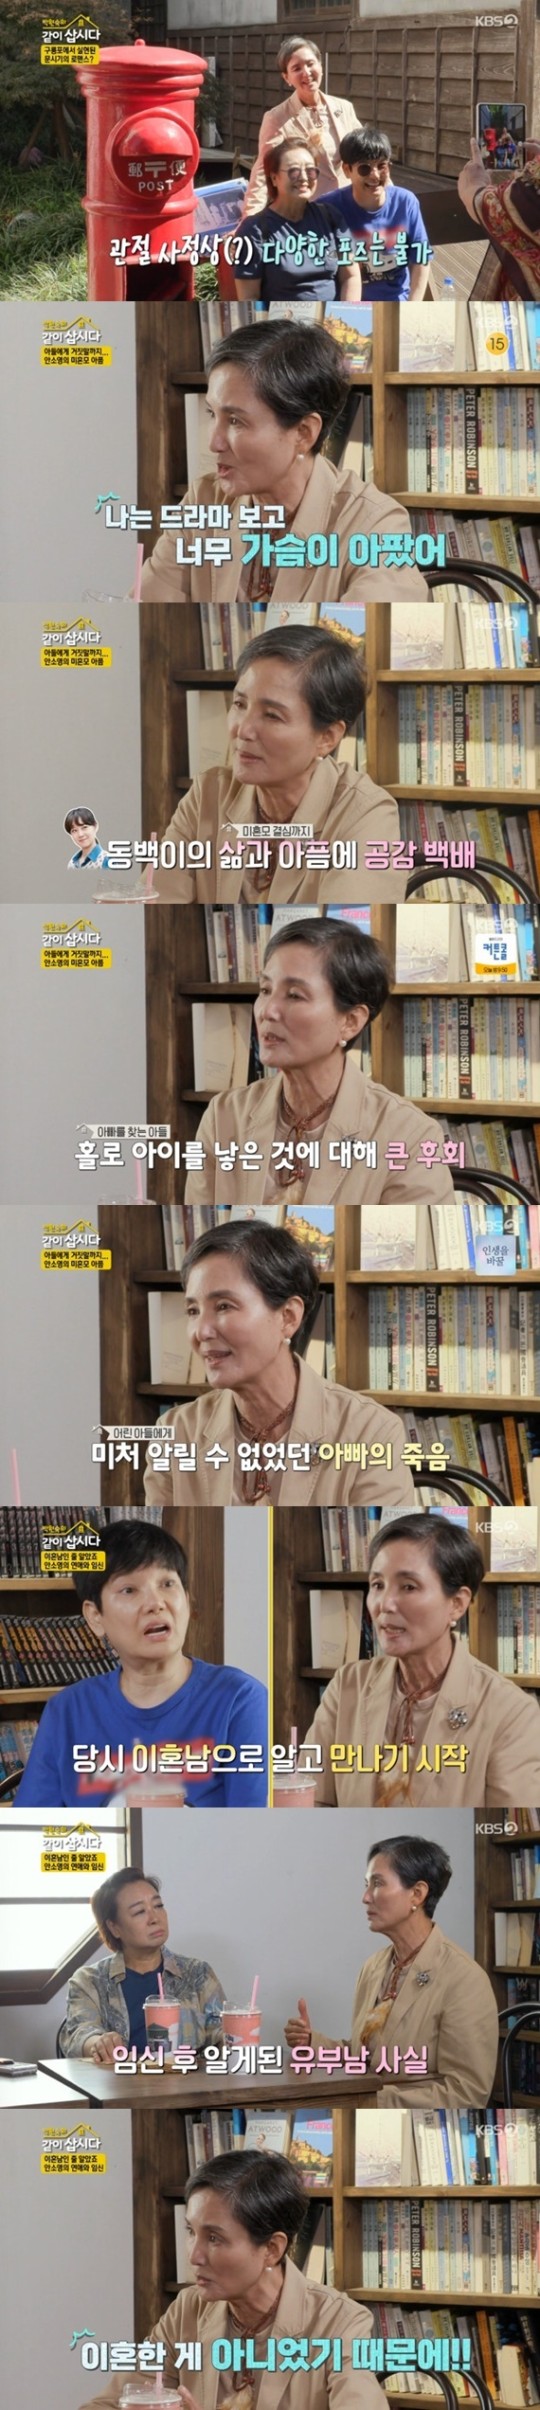 KBS 2TV 예능 프로그램 ‘박원숙의 같이 삽시다 시즌3’ 제공